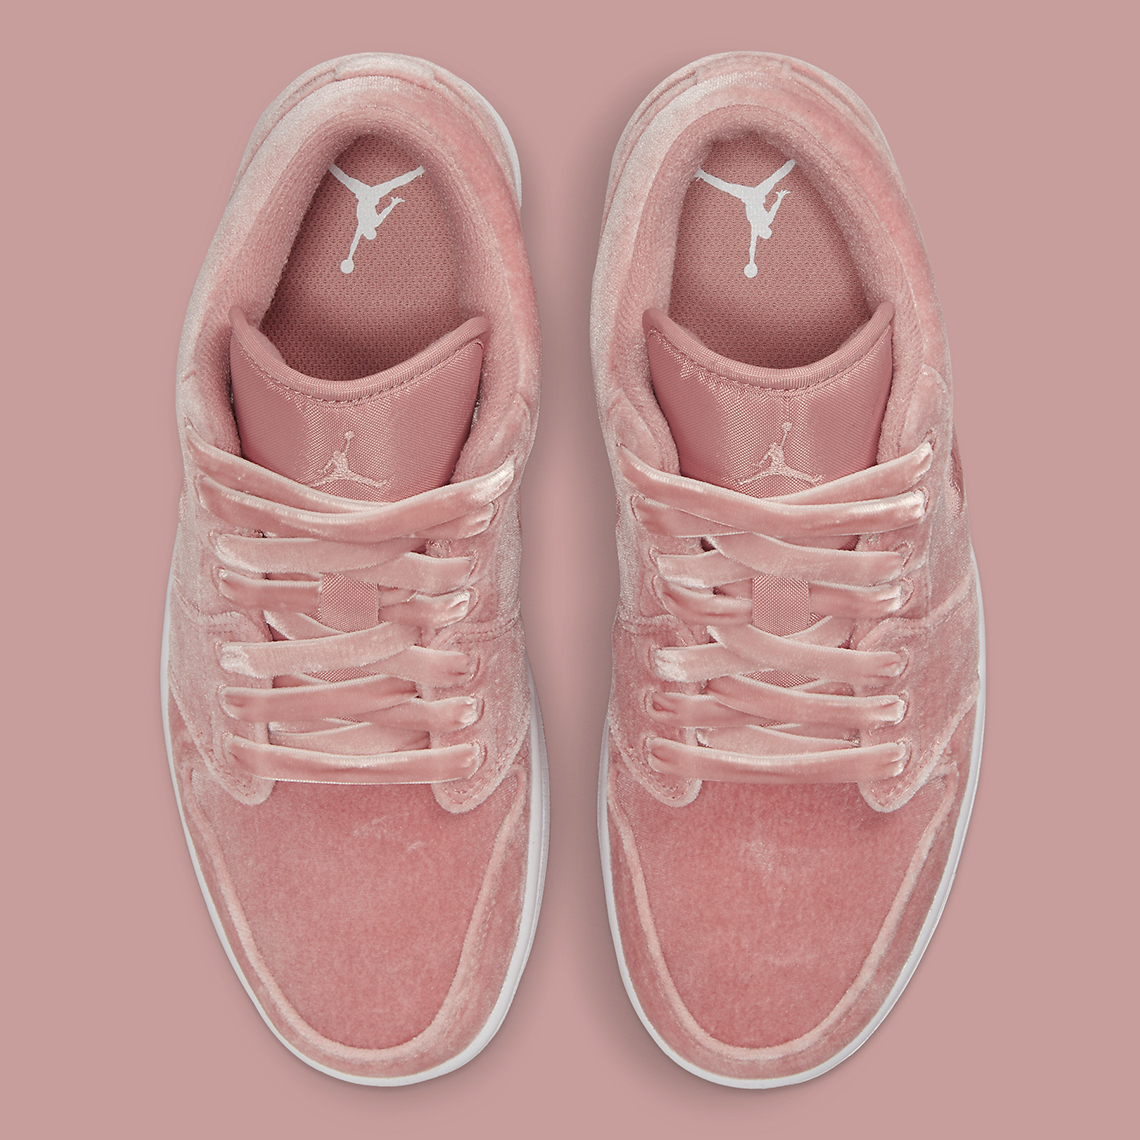 Air Jordan 1 Low Pink Velvet Dq8396 600 6